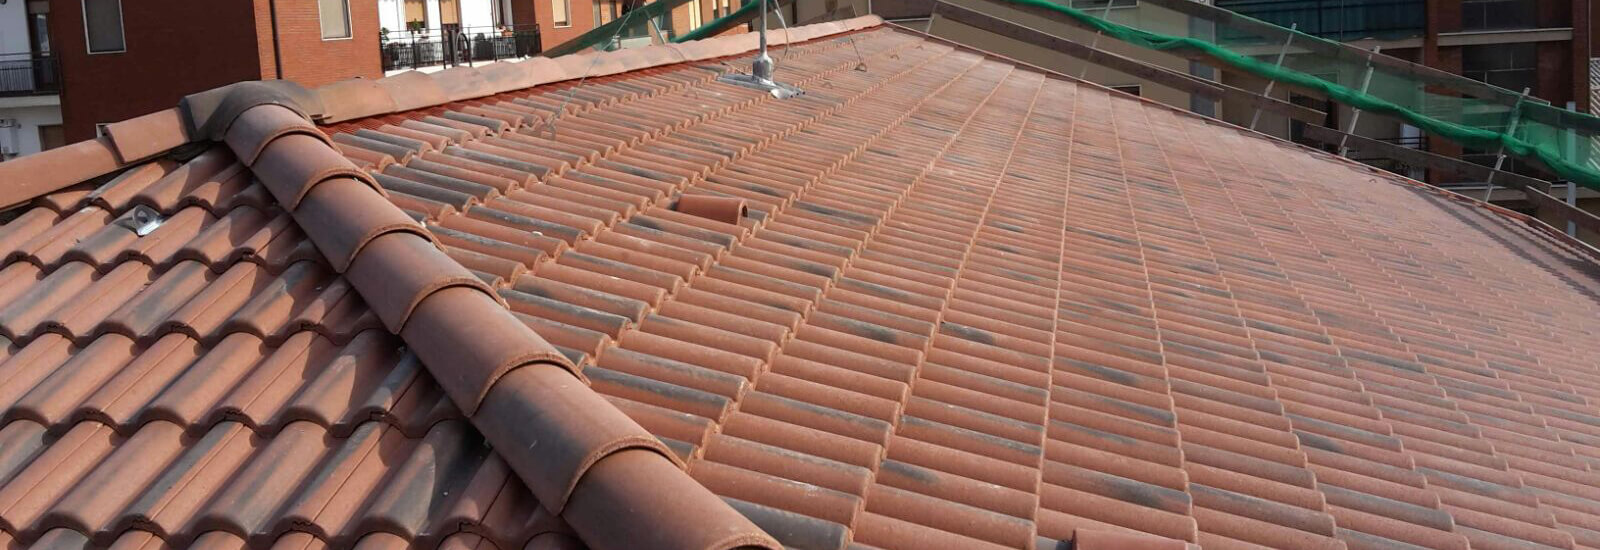 Realizzazione tetti ventilati bergamo tetti isolati e tetti in legno certificati